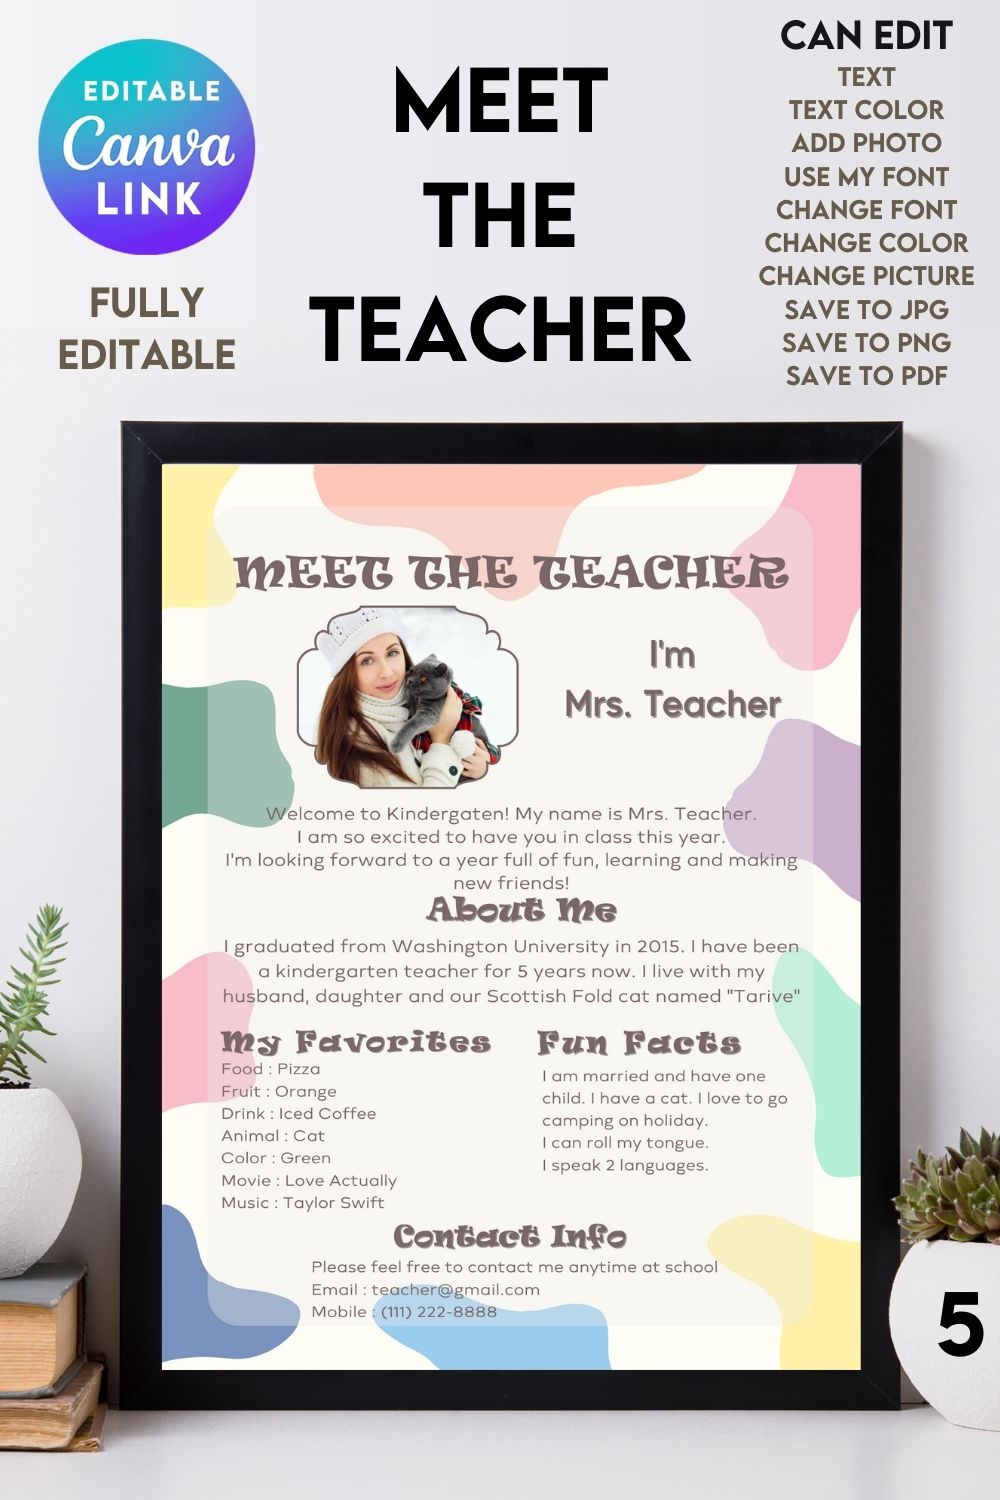 Meet The Teacher #5 – Canva Template pinterest preview image.